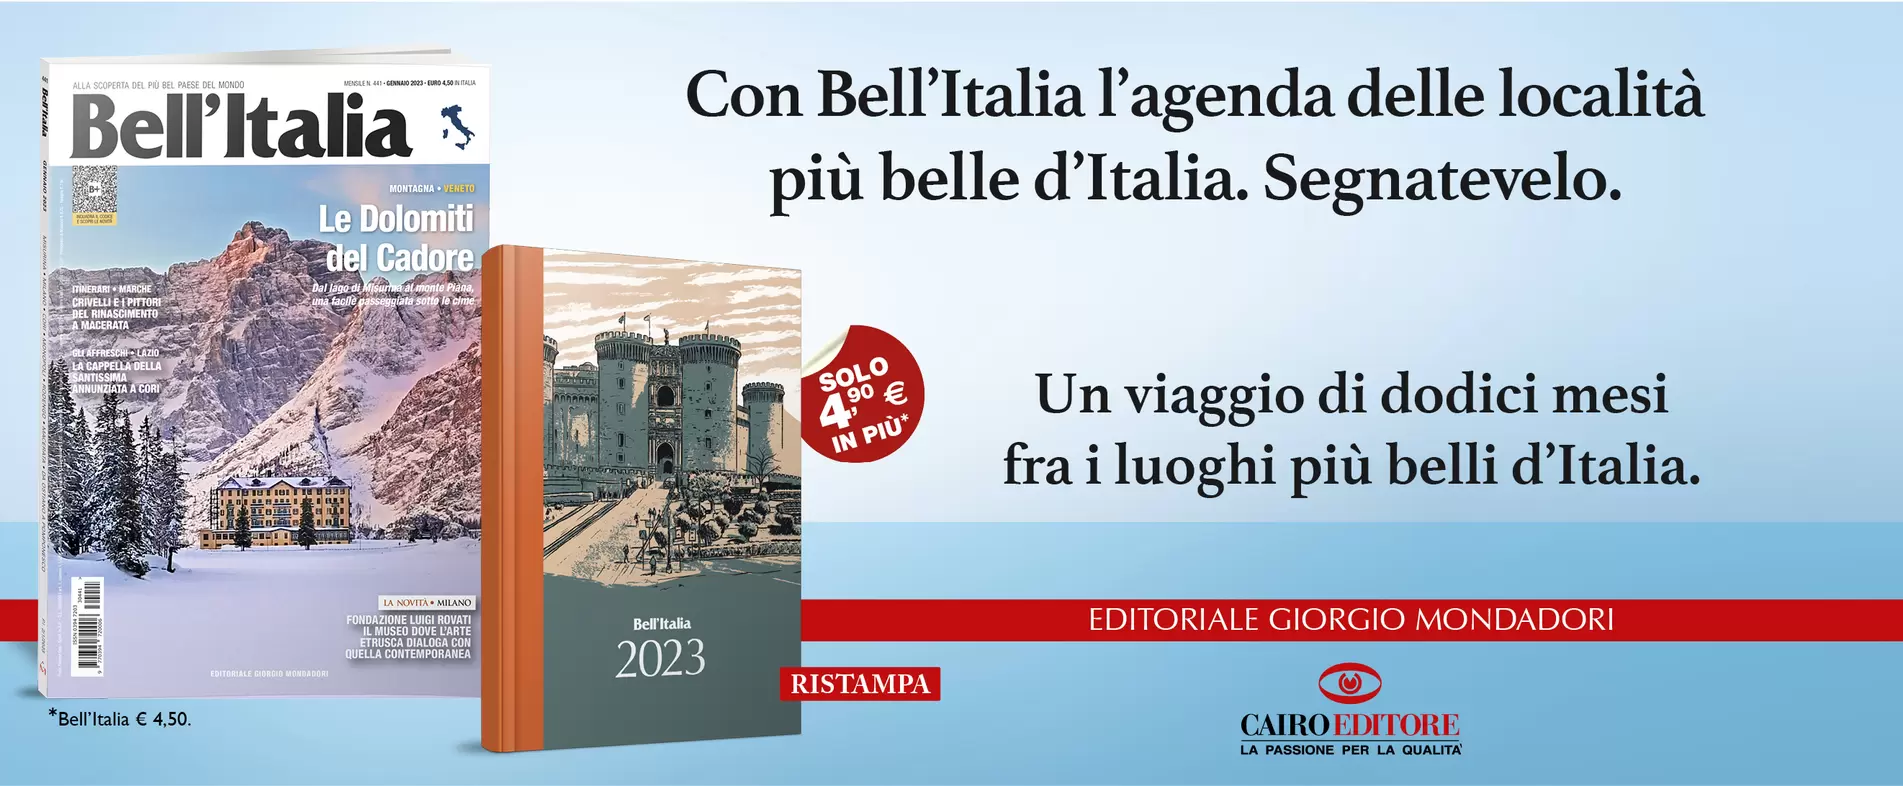 Con Bell’Italia l’agenda delle località  più belle d’Italia. Segnatevelo.